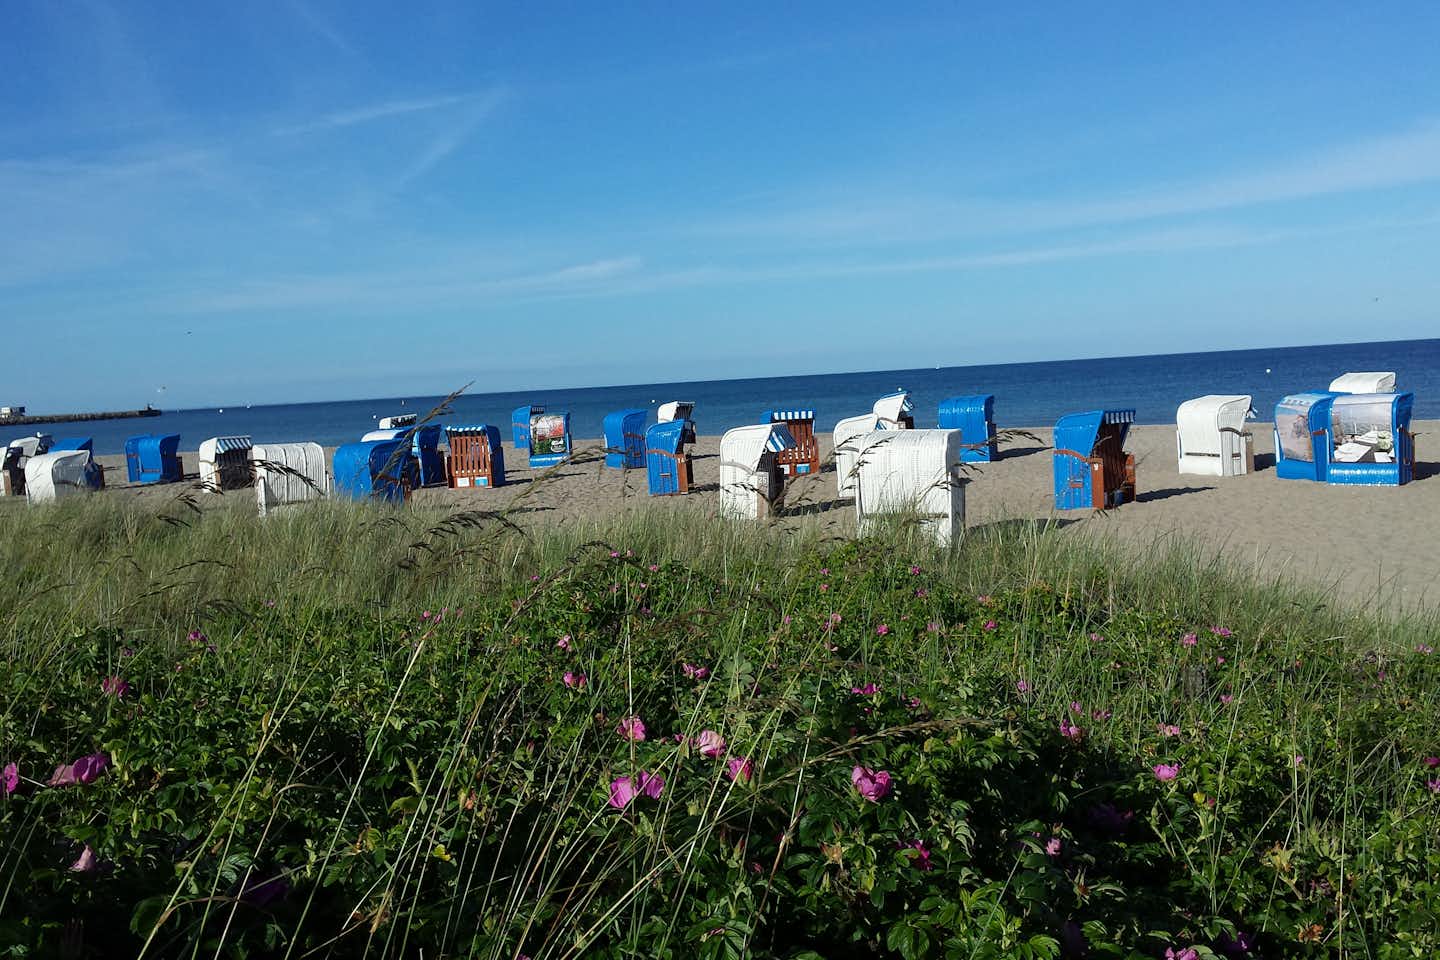 Campingplatz Olpenitz - Strandkörbe am Strand mit Blick auf die Ostsee in der Nähe des Campingplatzes